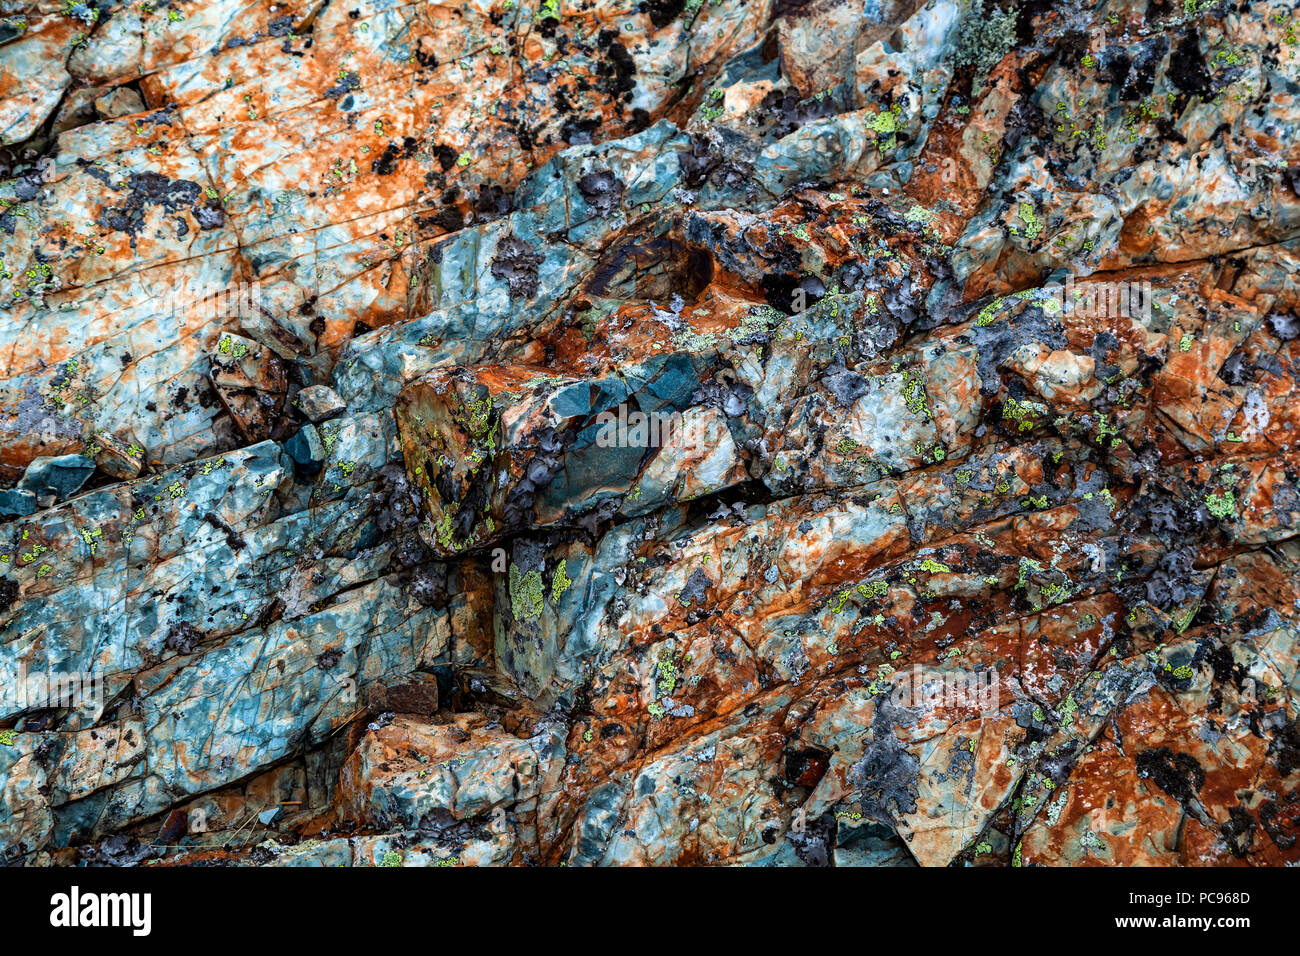 In der Nähe von Grau Steine Felsen bedeckt mit Moos. Berge bedeckt mit einem Muster von Chips, Risse, Vegetation und Moss Stockfoto